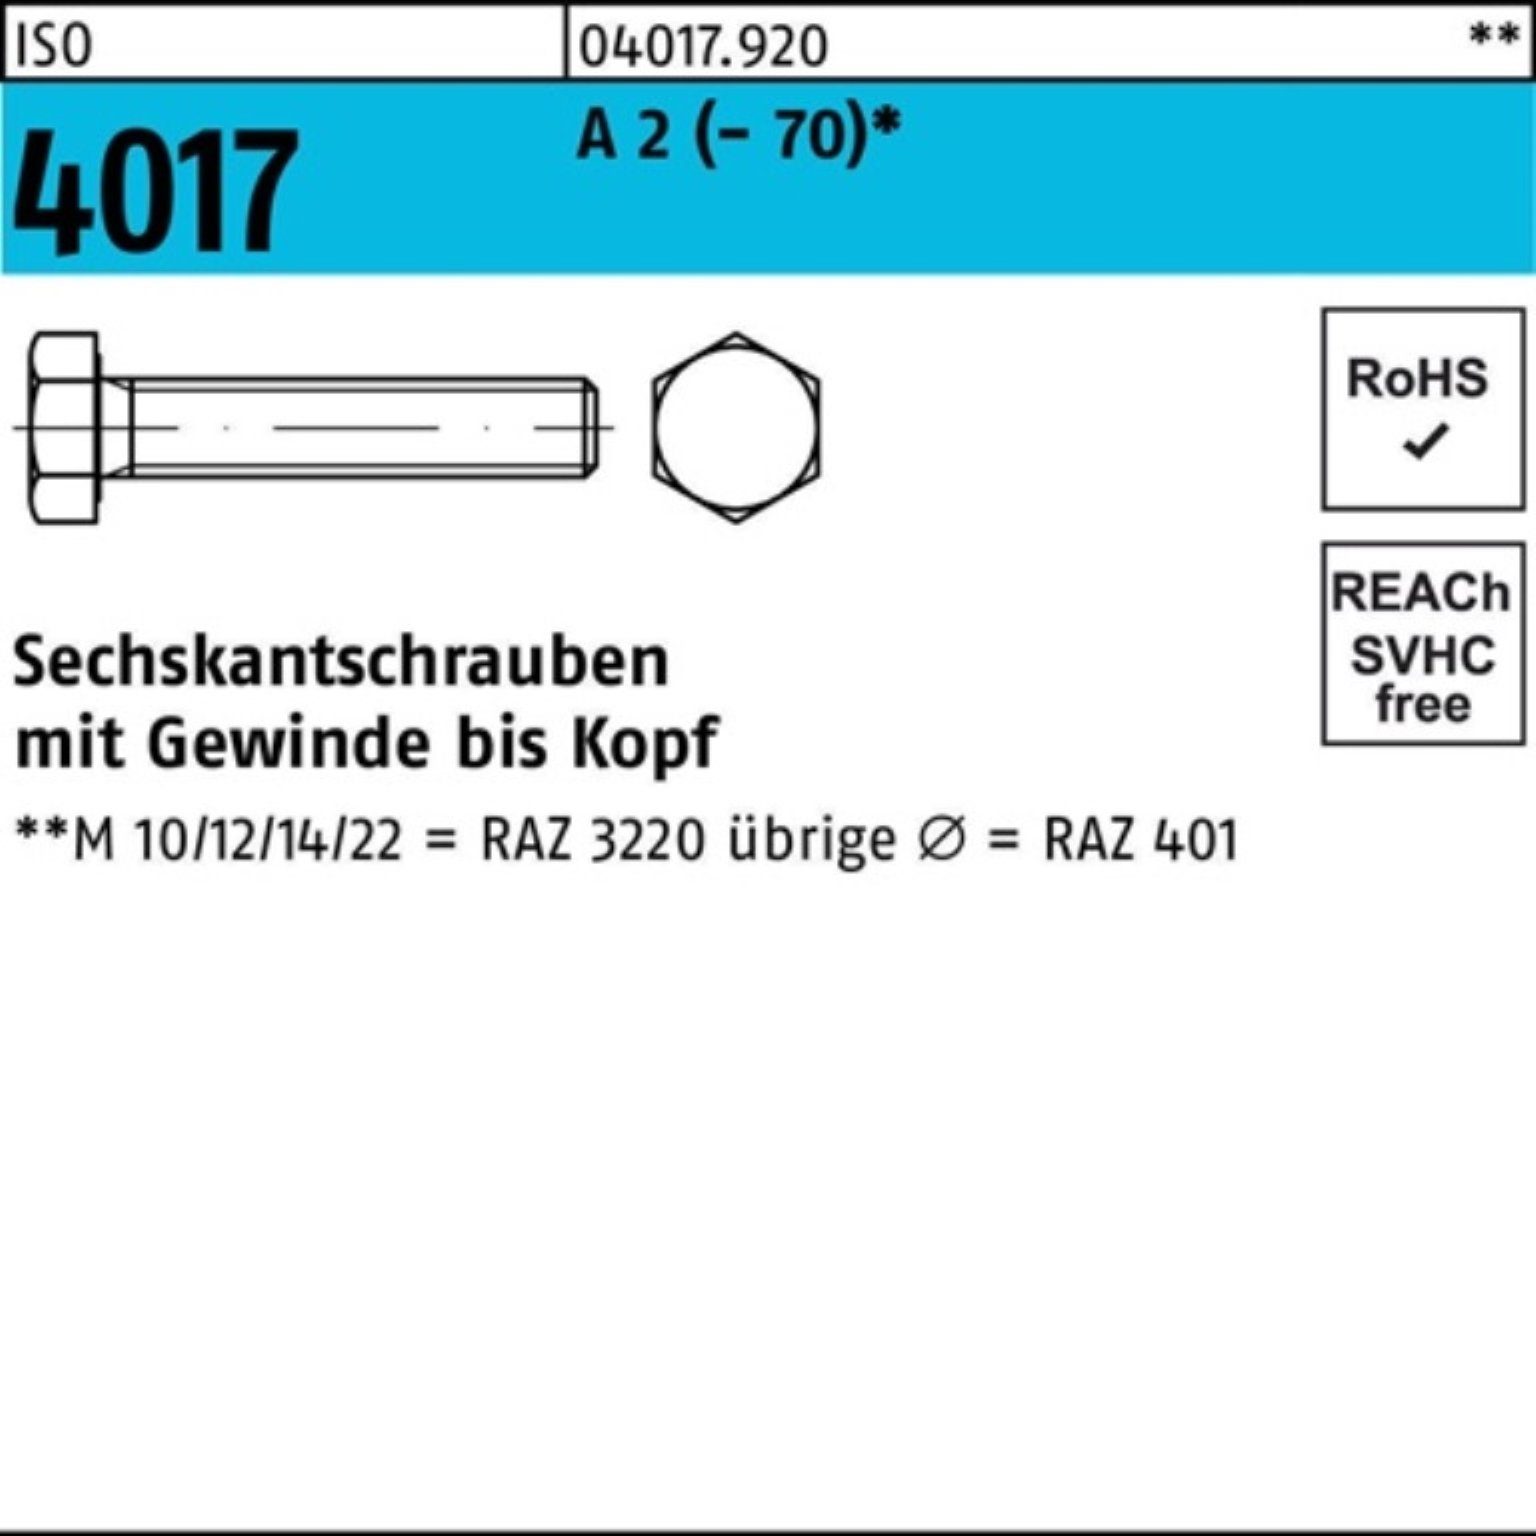 2 ISO M4x VG 200 ISO 401 Bufab Pack Sechskantschraube Stück 10 Sechskantschraube 4017 A 200er